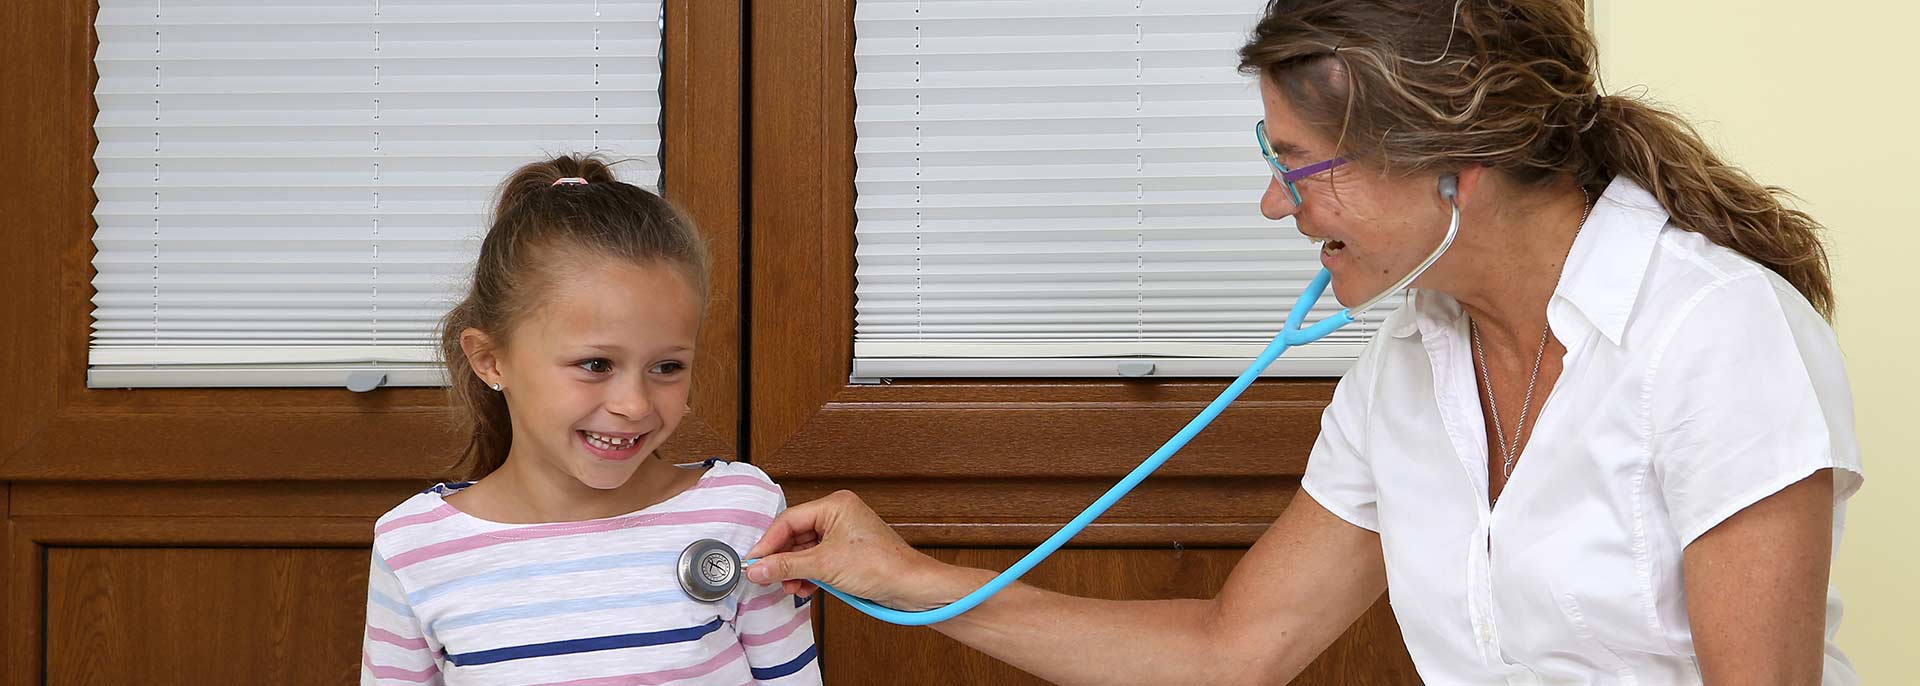 Ärztin hört Kind mit Stethoskop ab 